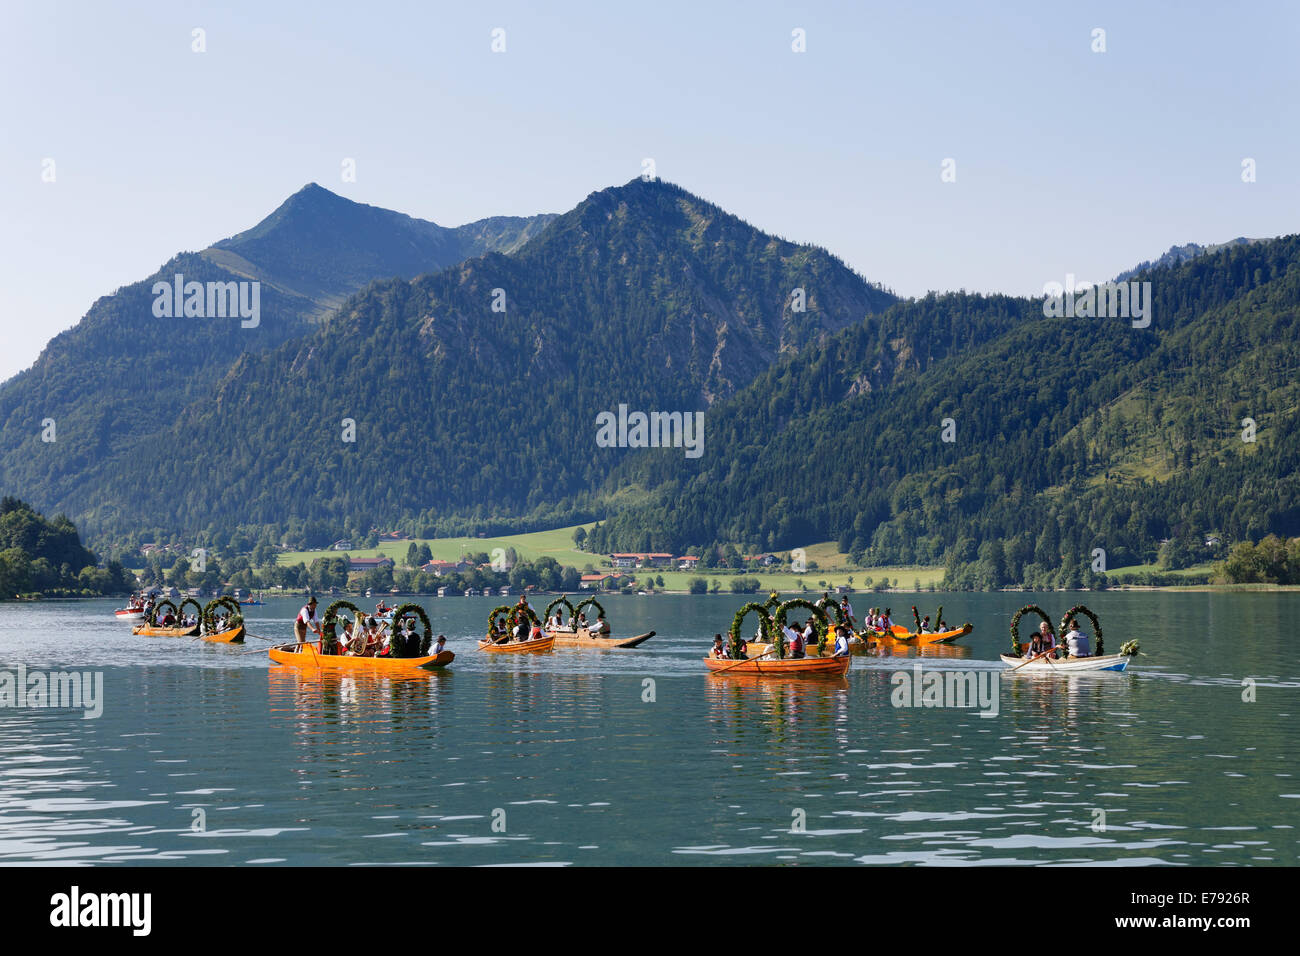 Die Einheimischen tragen Trachten in dekorierten Plätte Holzboote, Brecherspitz Berg auf der Rückseite, Stockfoto